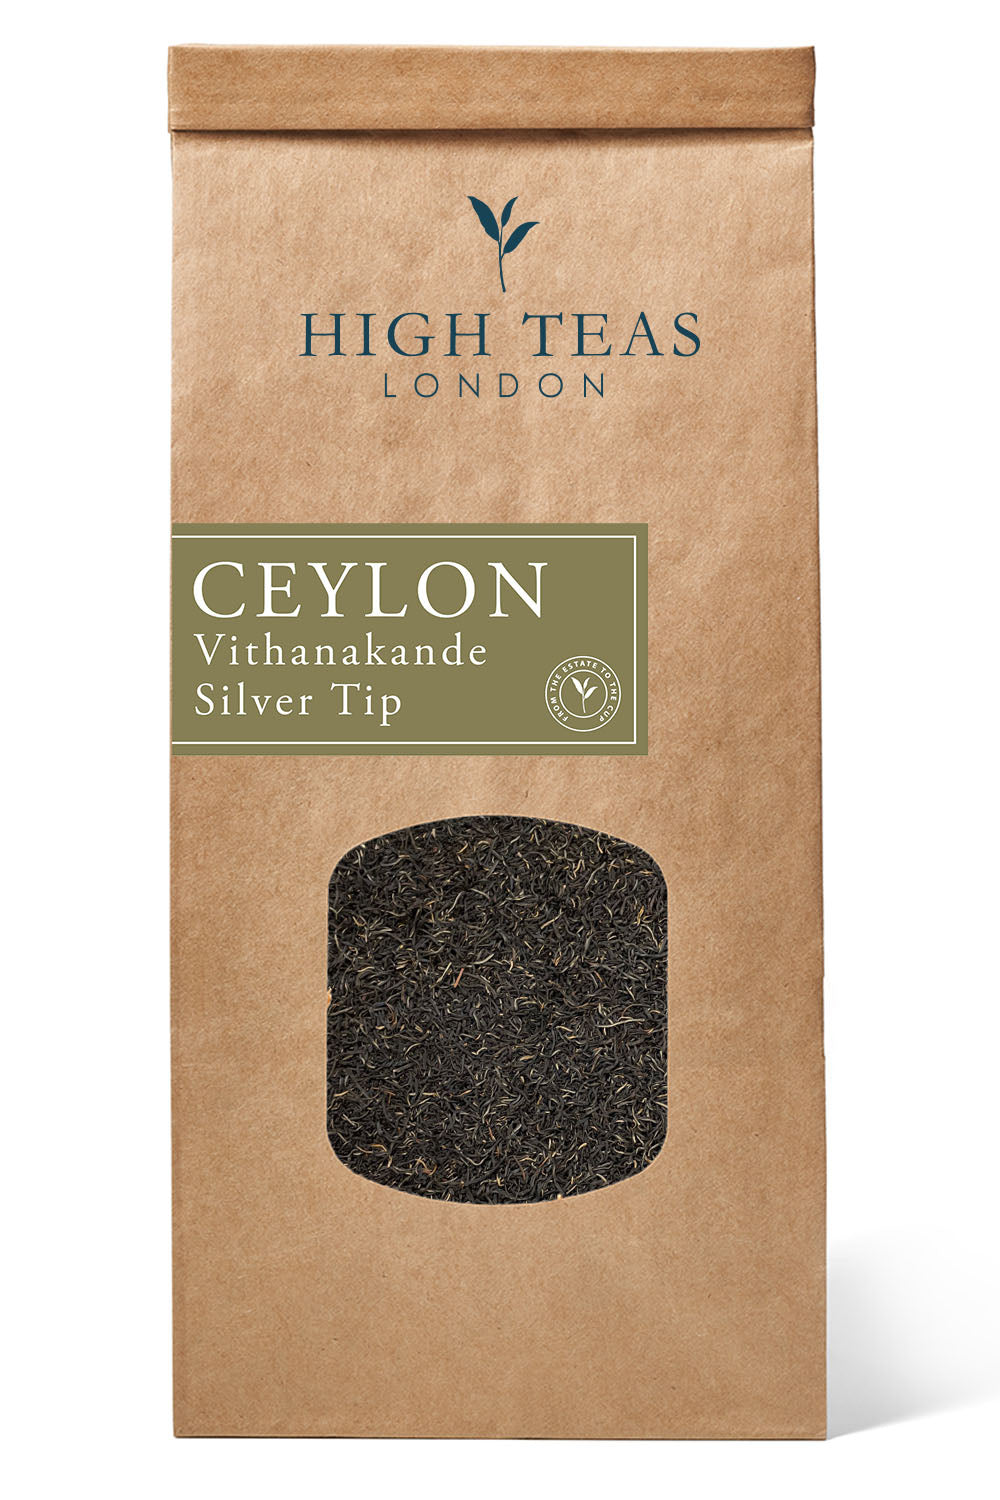 Ceylon Vithanakande Silver Tip-250g-Loose Leaf Tea-High Teas